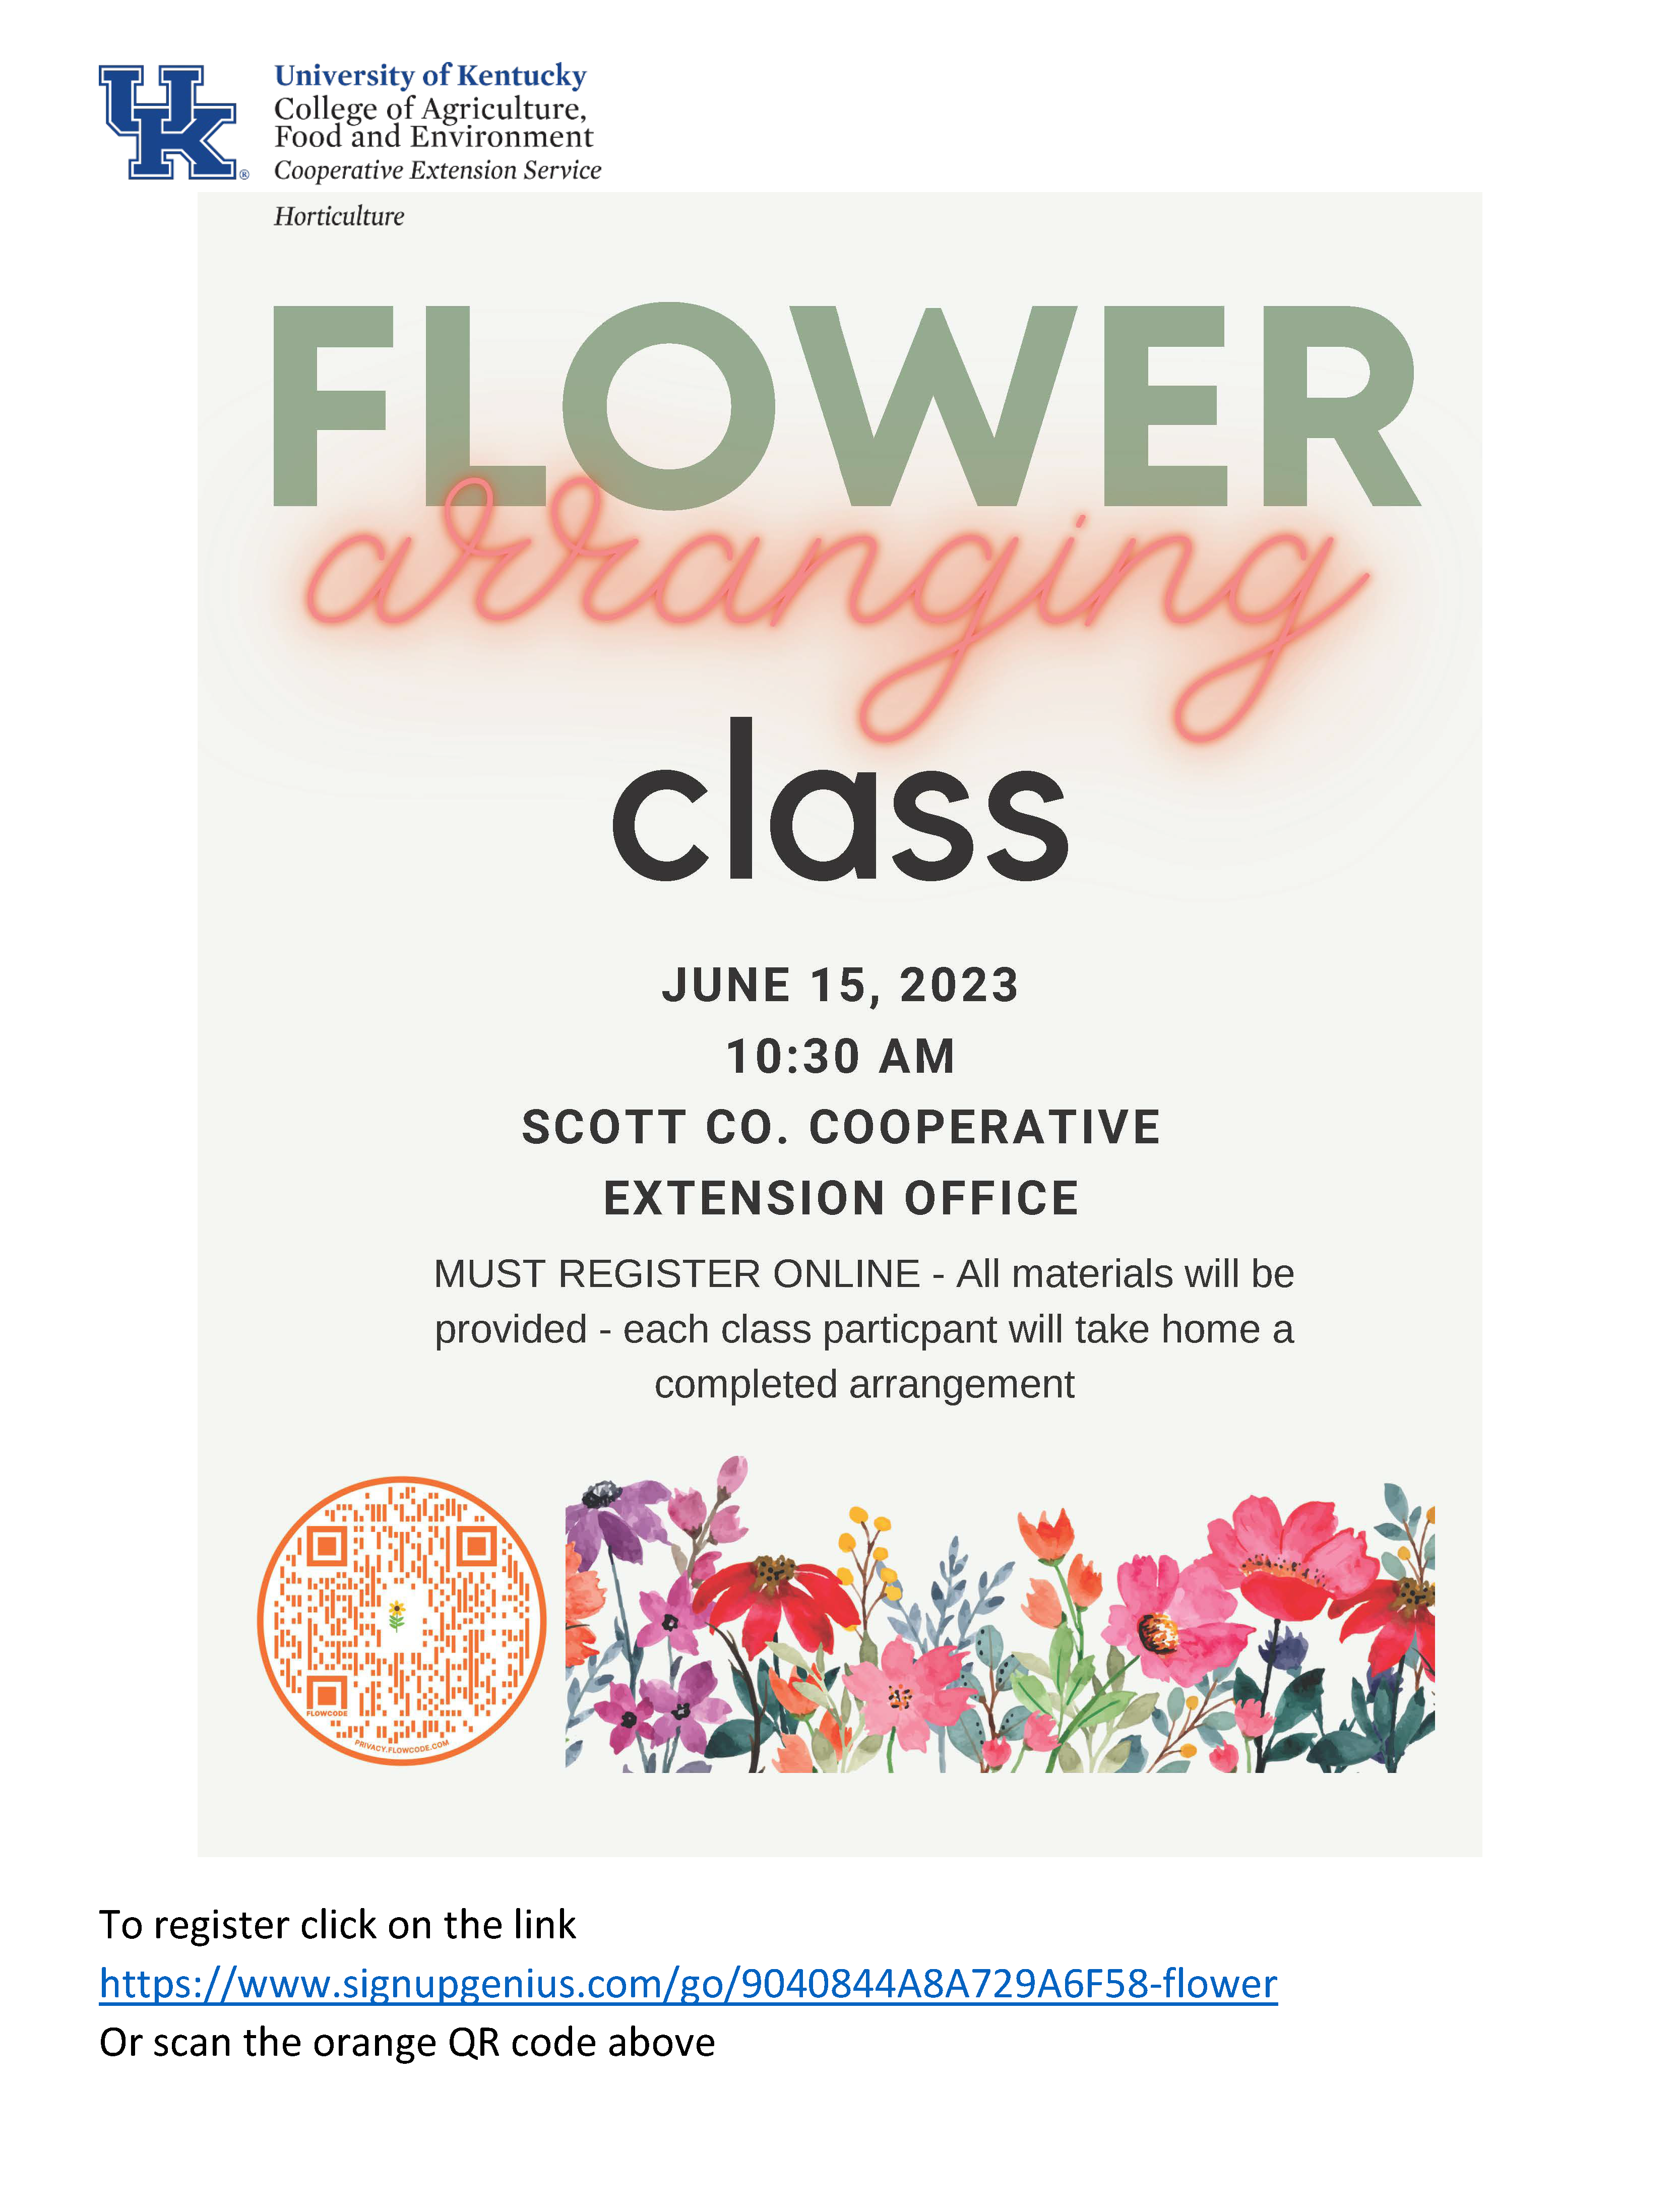 flower arranging class flyer